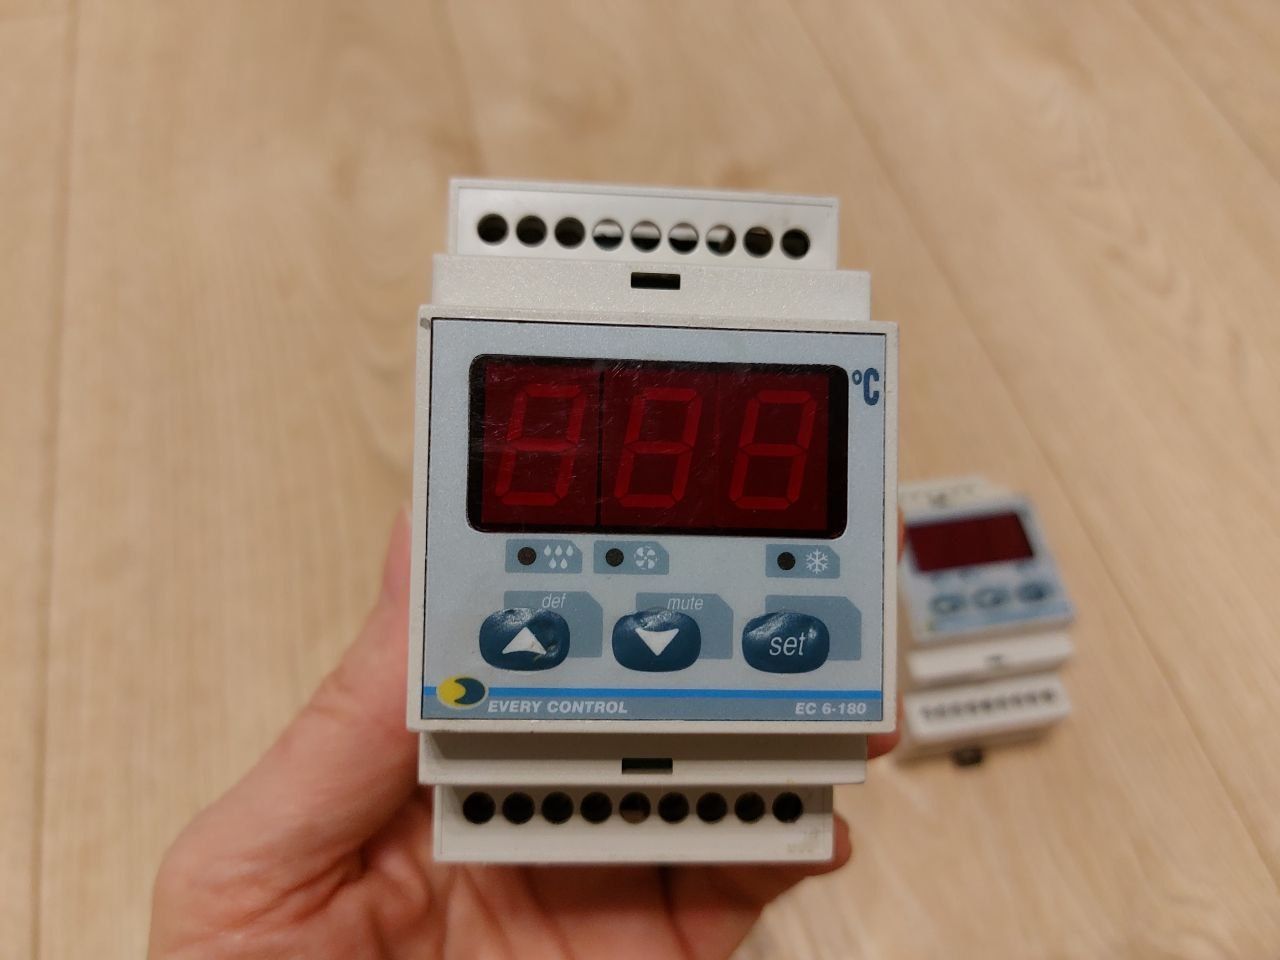 Электронный блок управления по температуре Evco EC6-180